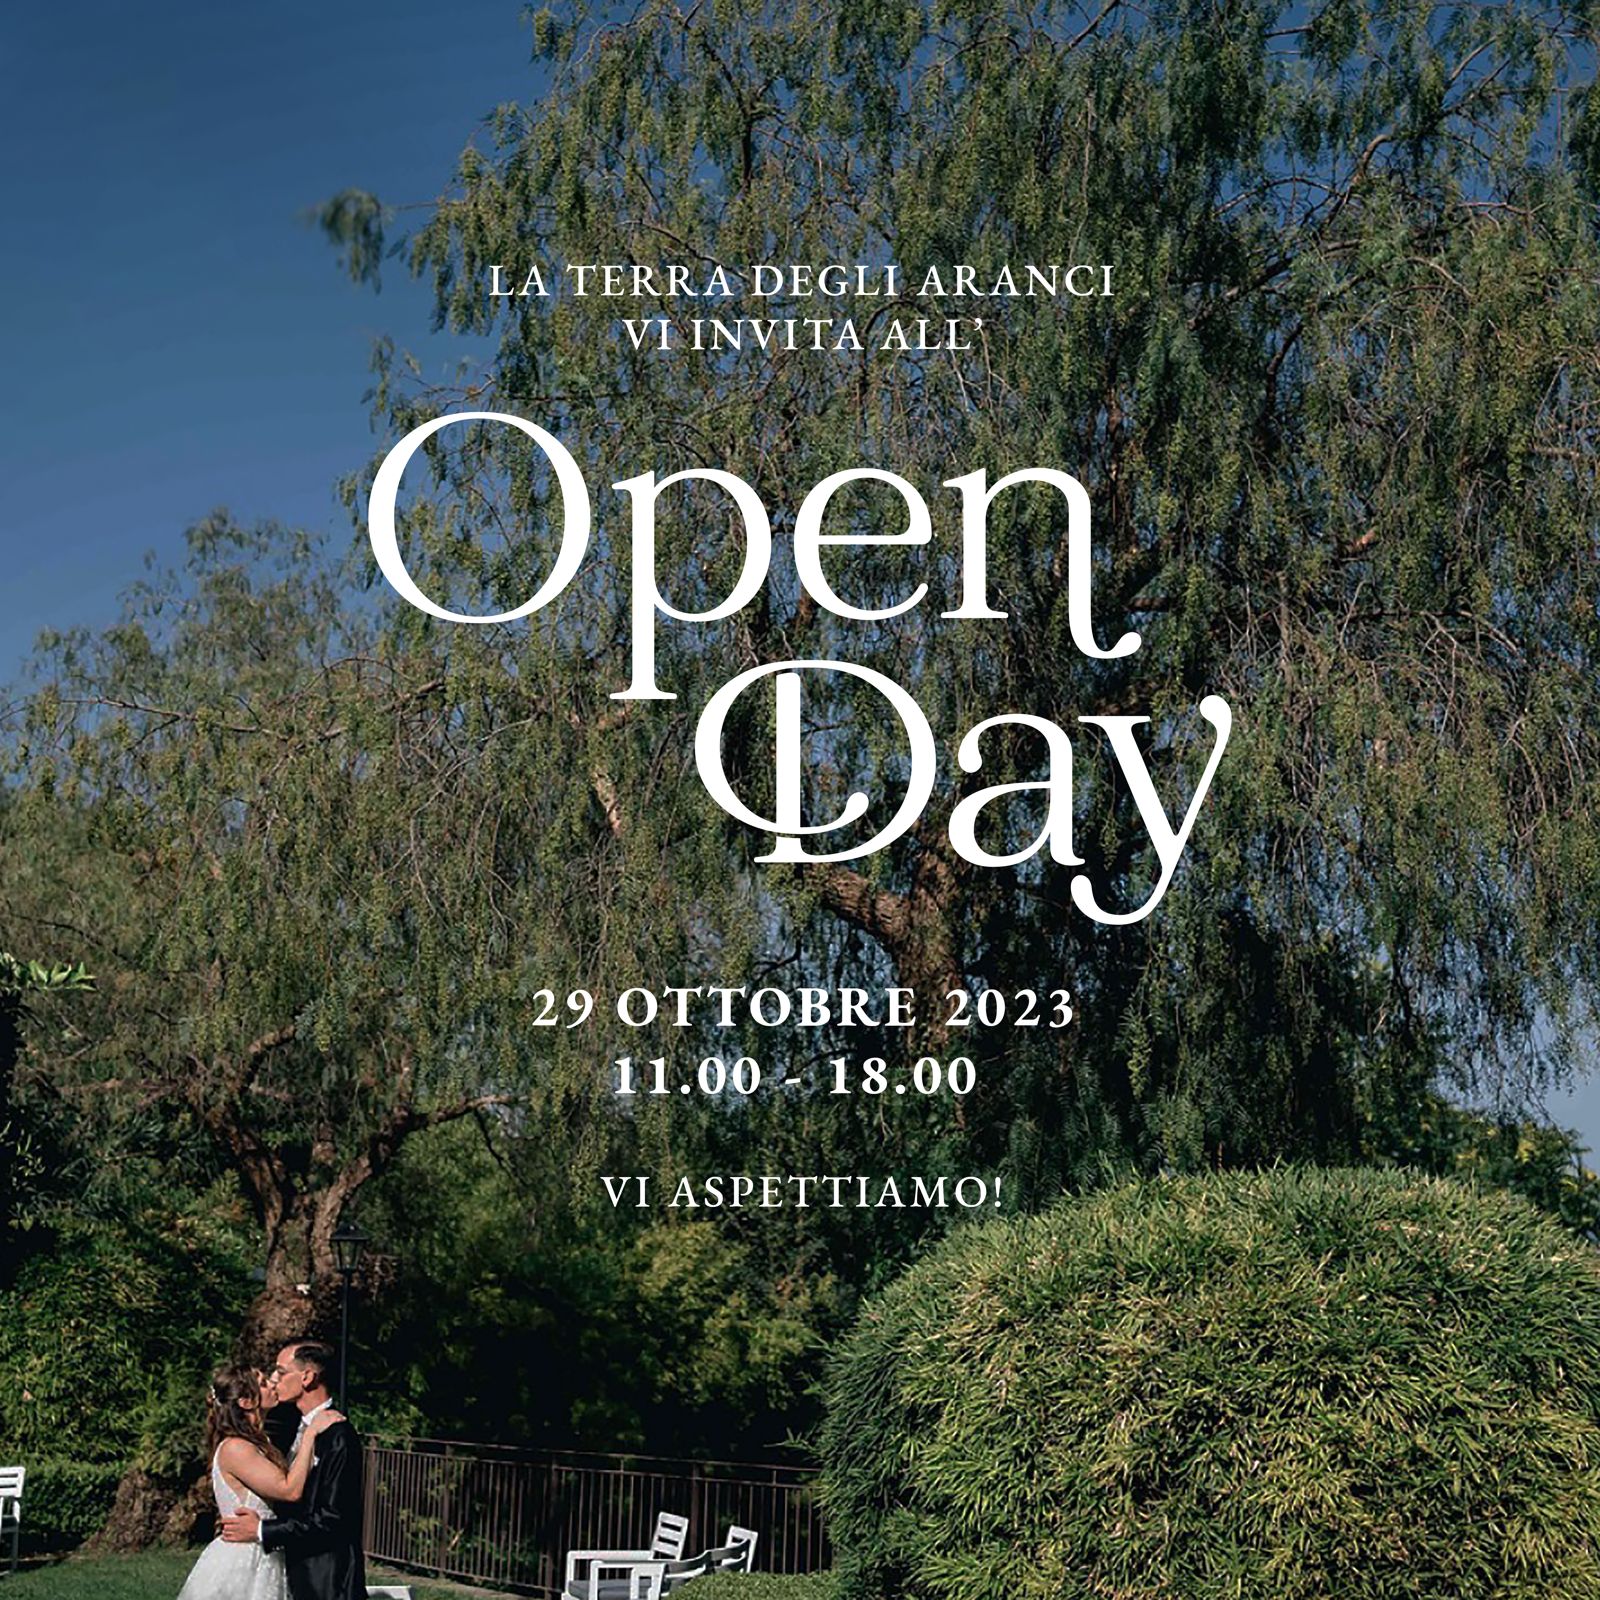 Open day 2023 a La Terra degli Aranci - Sesta edizione